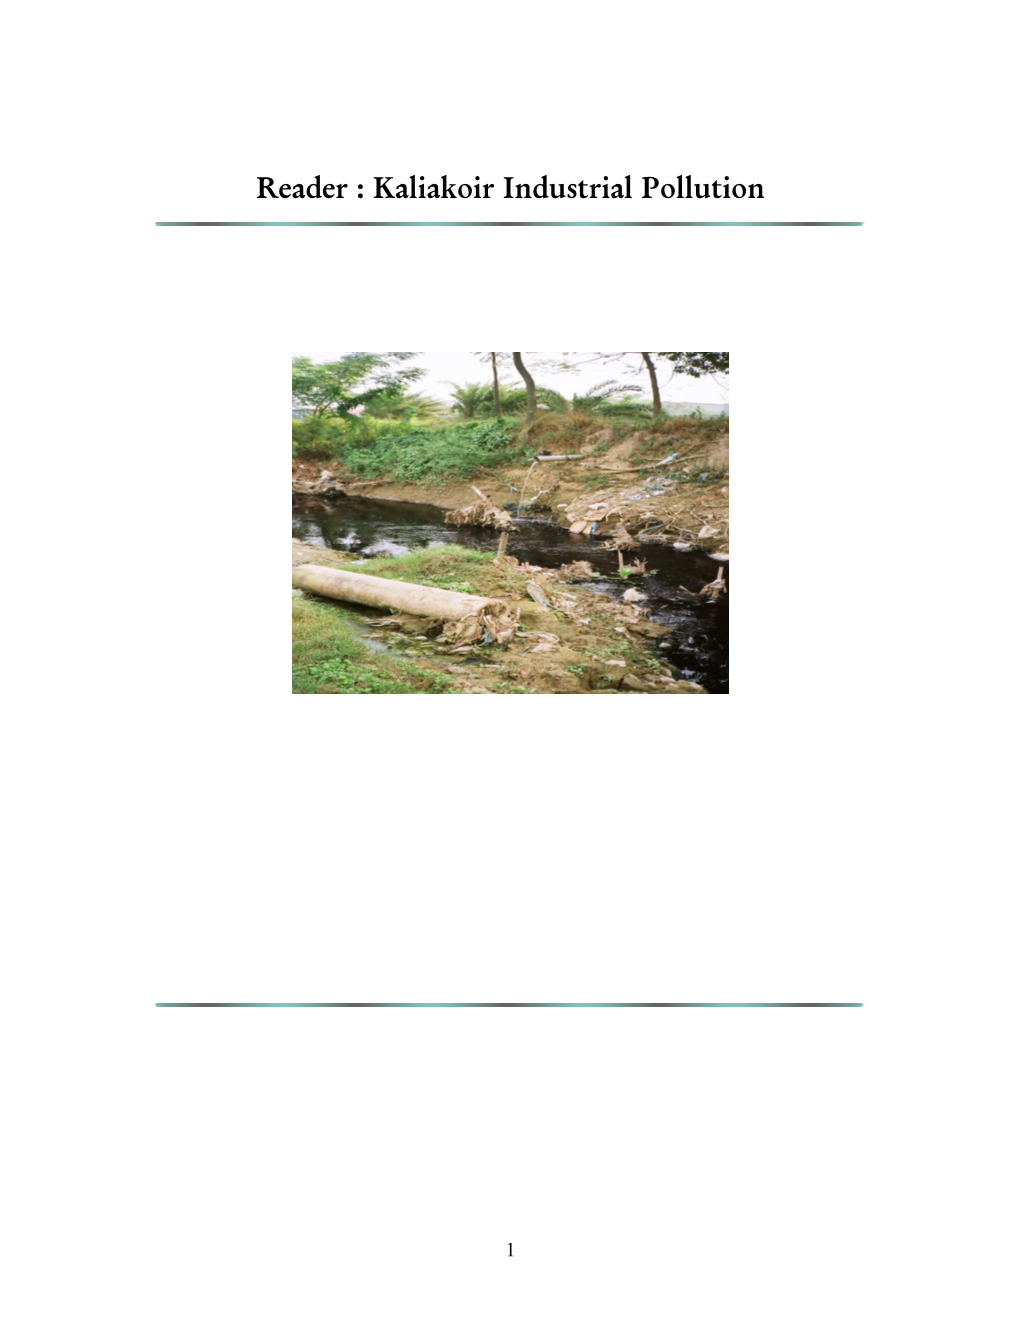 Kaliakoir Industrial Pollution